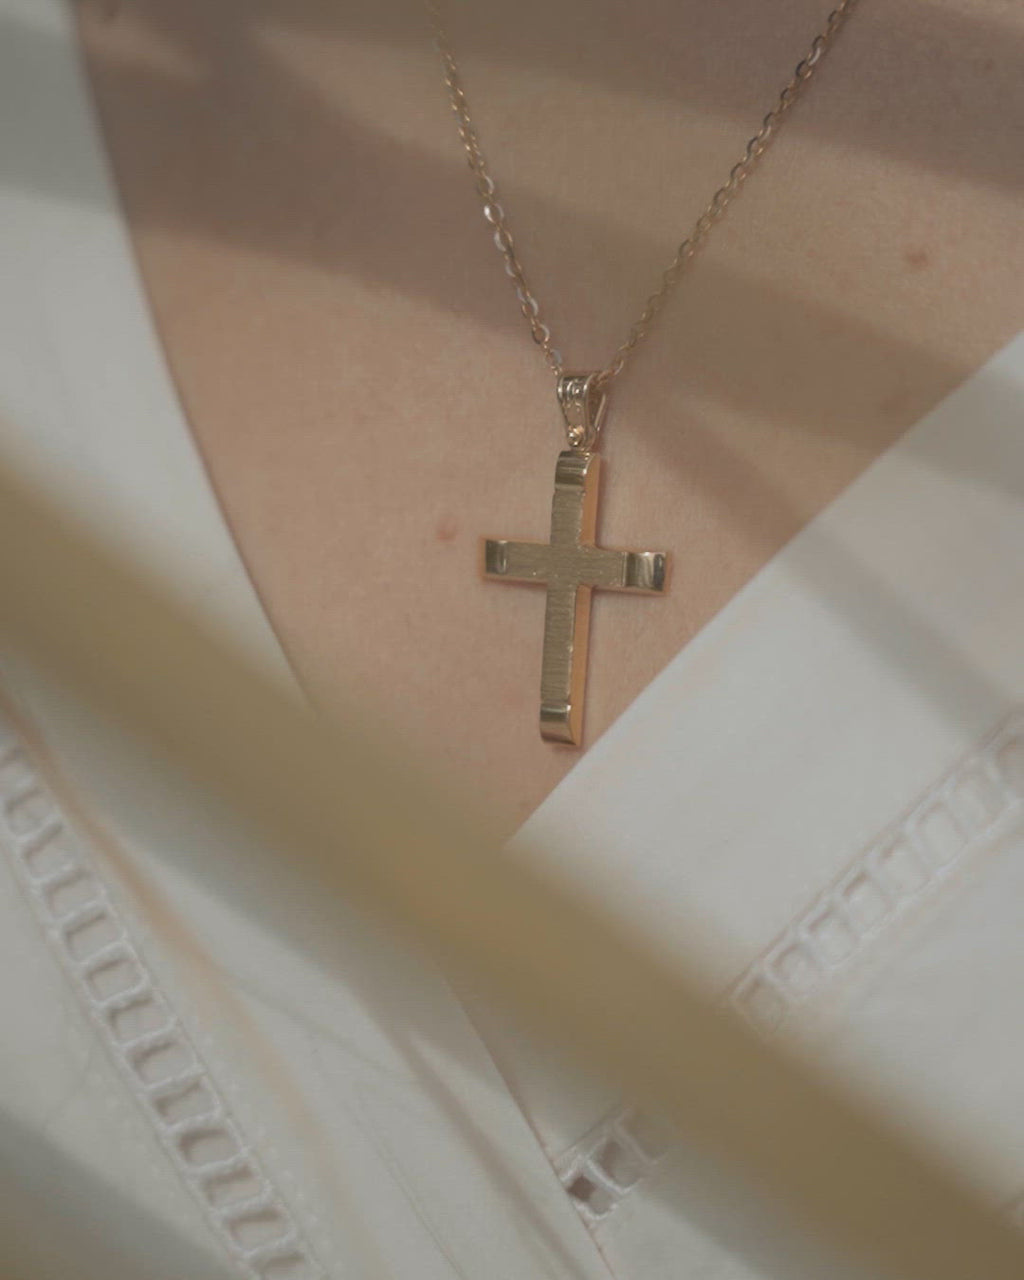 Γυναικείος χρυσός βαφτιστικός σταυρός Κ14, σαγρέ με λουστράτες άκρες, φορεμένος σε μοντέλο.